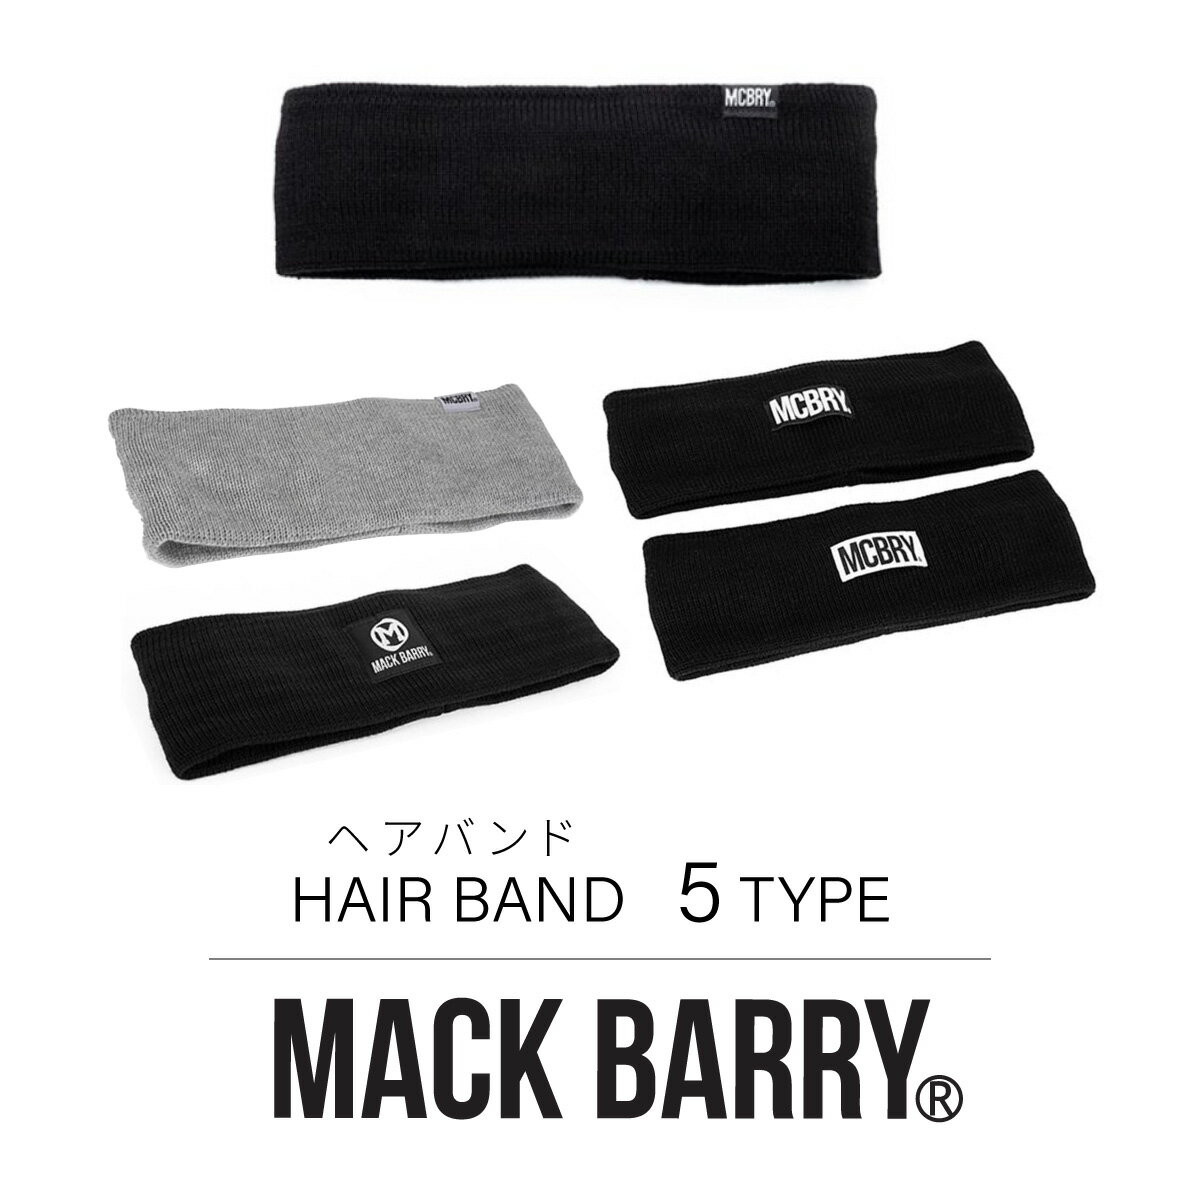 MACK BARRY 国内正規品 ヘアバンド ヘアアクセサリー HAIR BAND メンズ レディース 韓国 K-POP ファッション シンプル おしゃれ ブラック プレゼント マクバリー 海外ブランド 黒 白 グレー mack barry